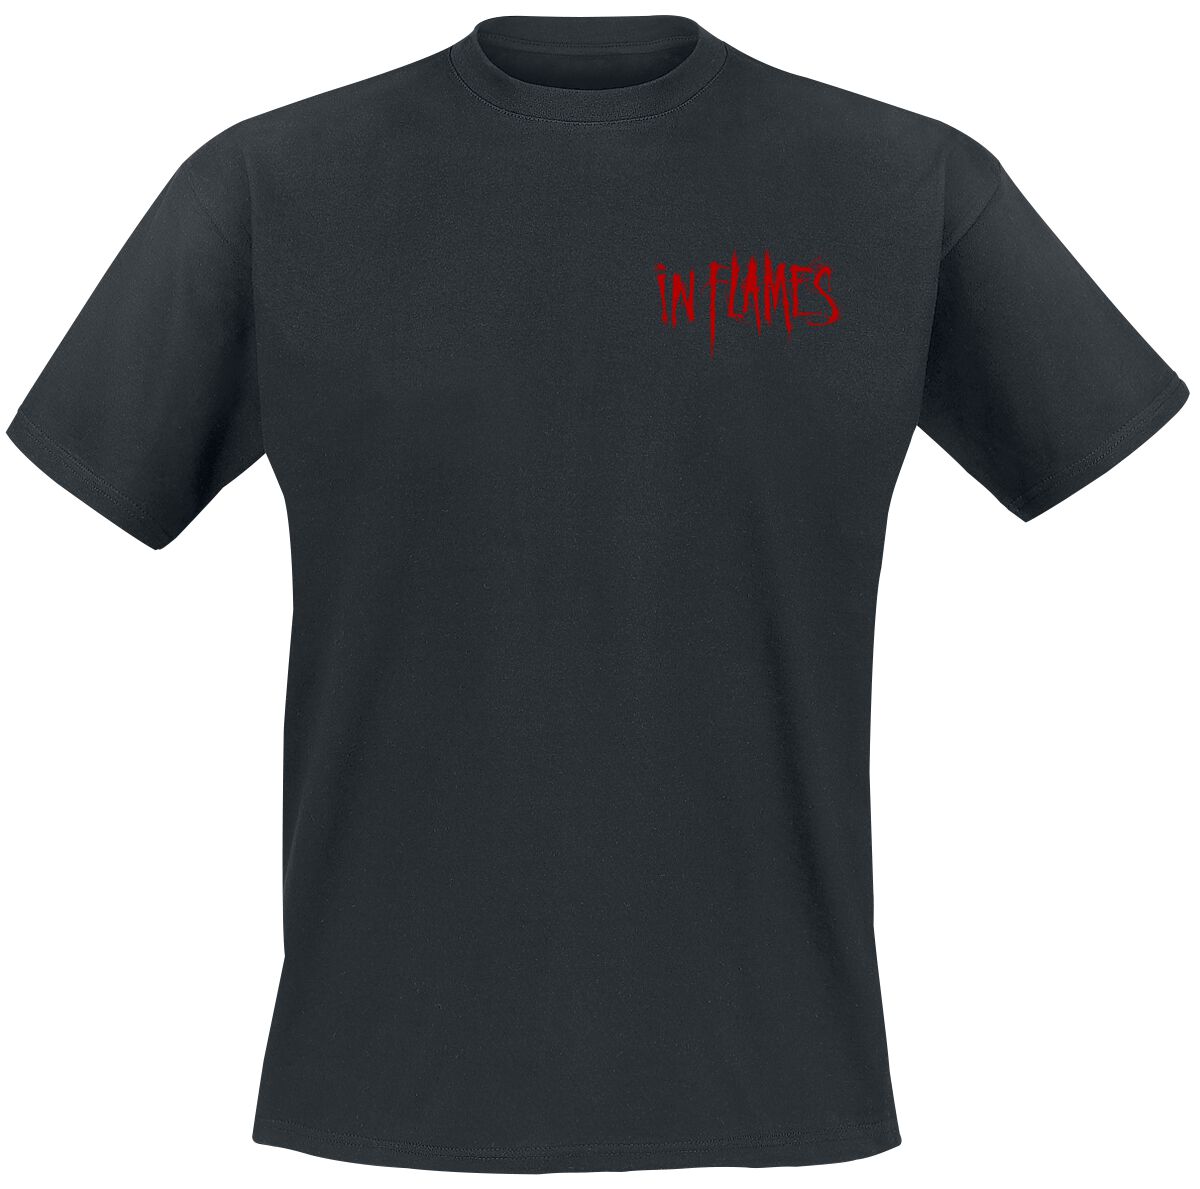 In Flames T-Shirt - Ghoul - S bis 3XL - für Männer - Größe M - schwarz  - Lizenziertes Merchandise!